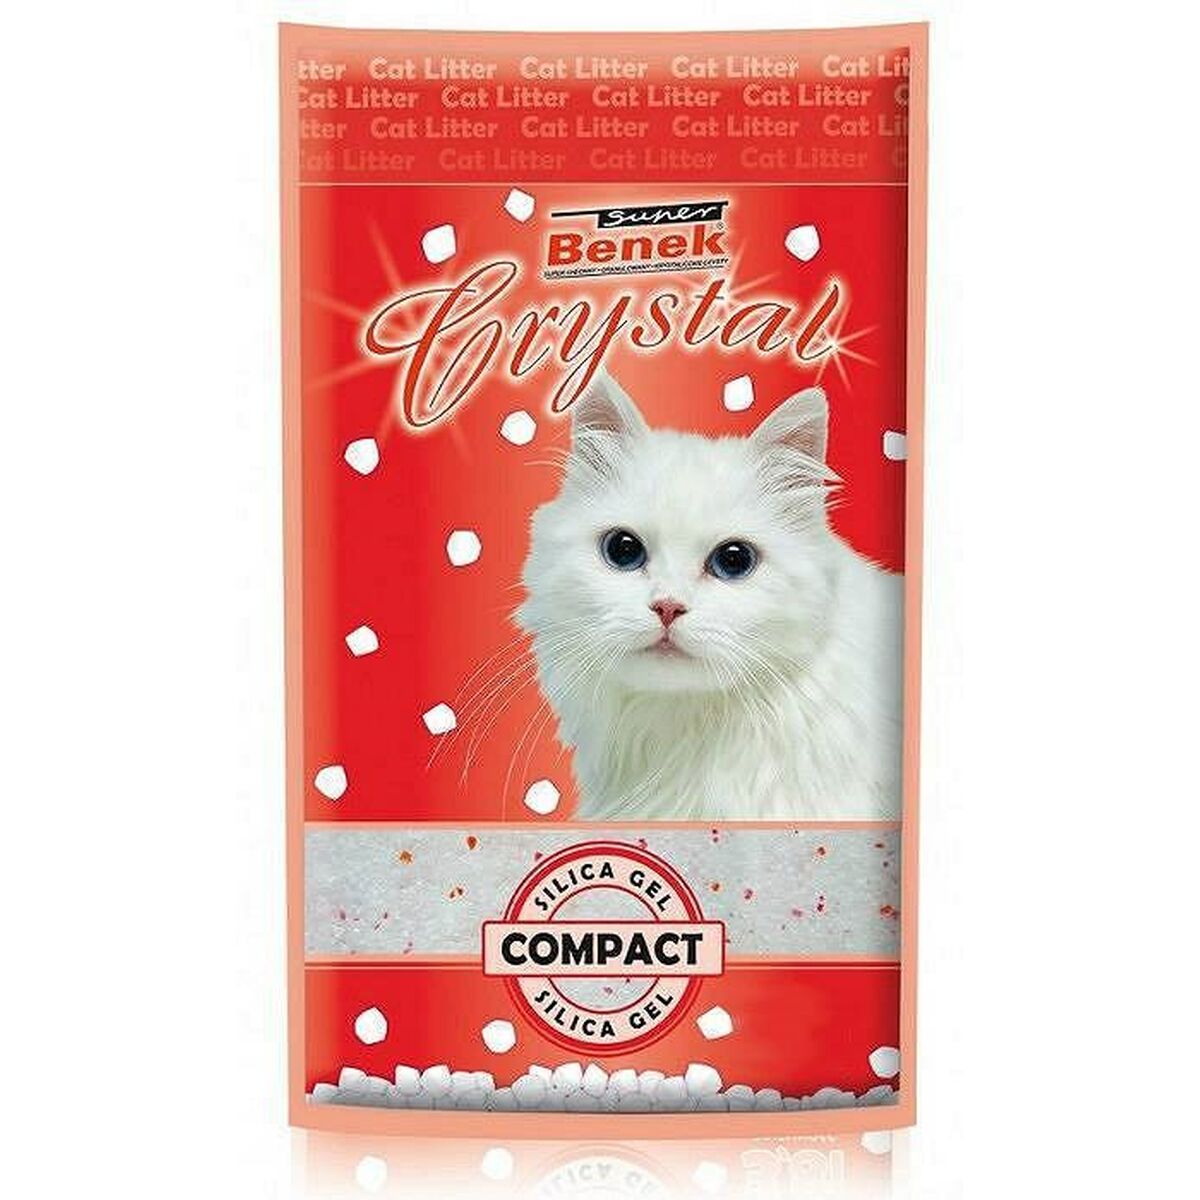 Sable pour chats Super Benek Crystal Compact 7,6 L